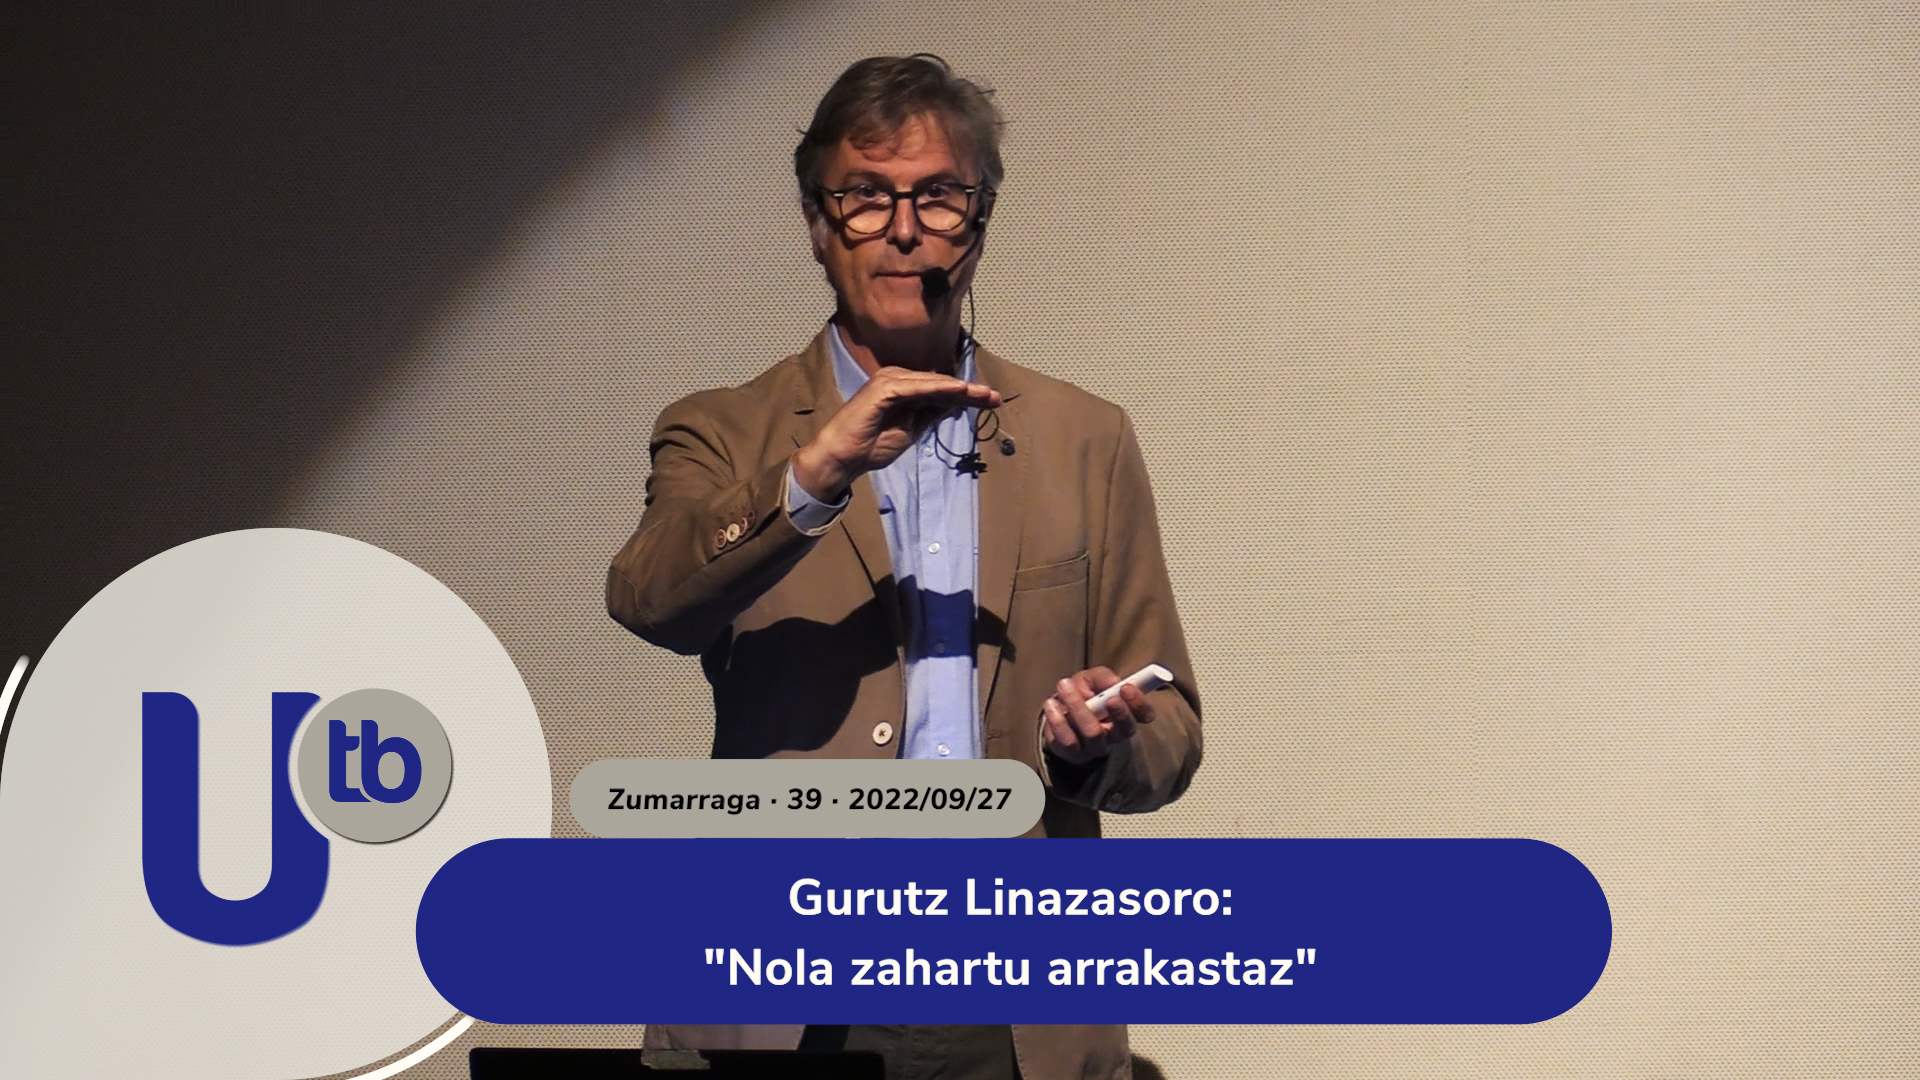 Gurutz Linazasoro: “Cómo envejecer con éxito”